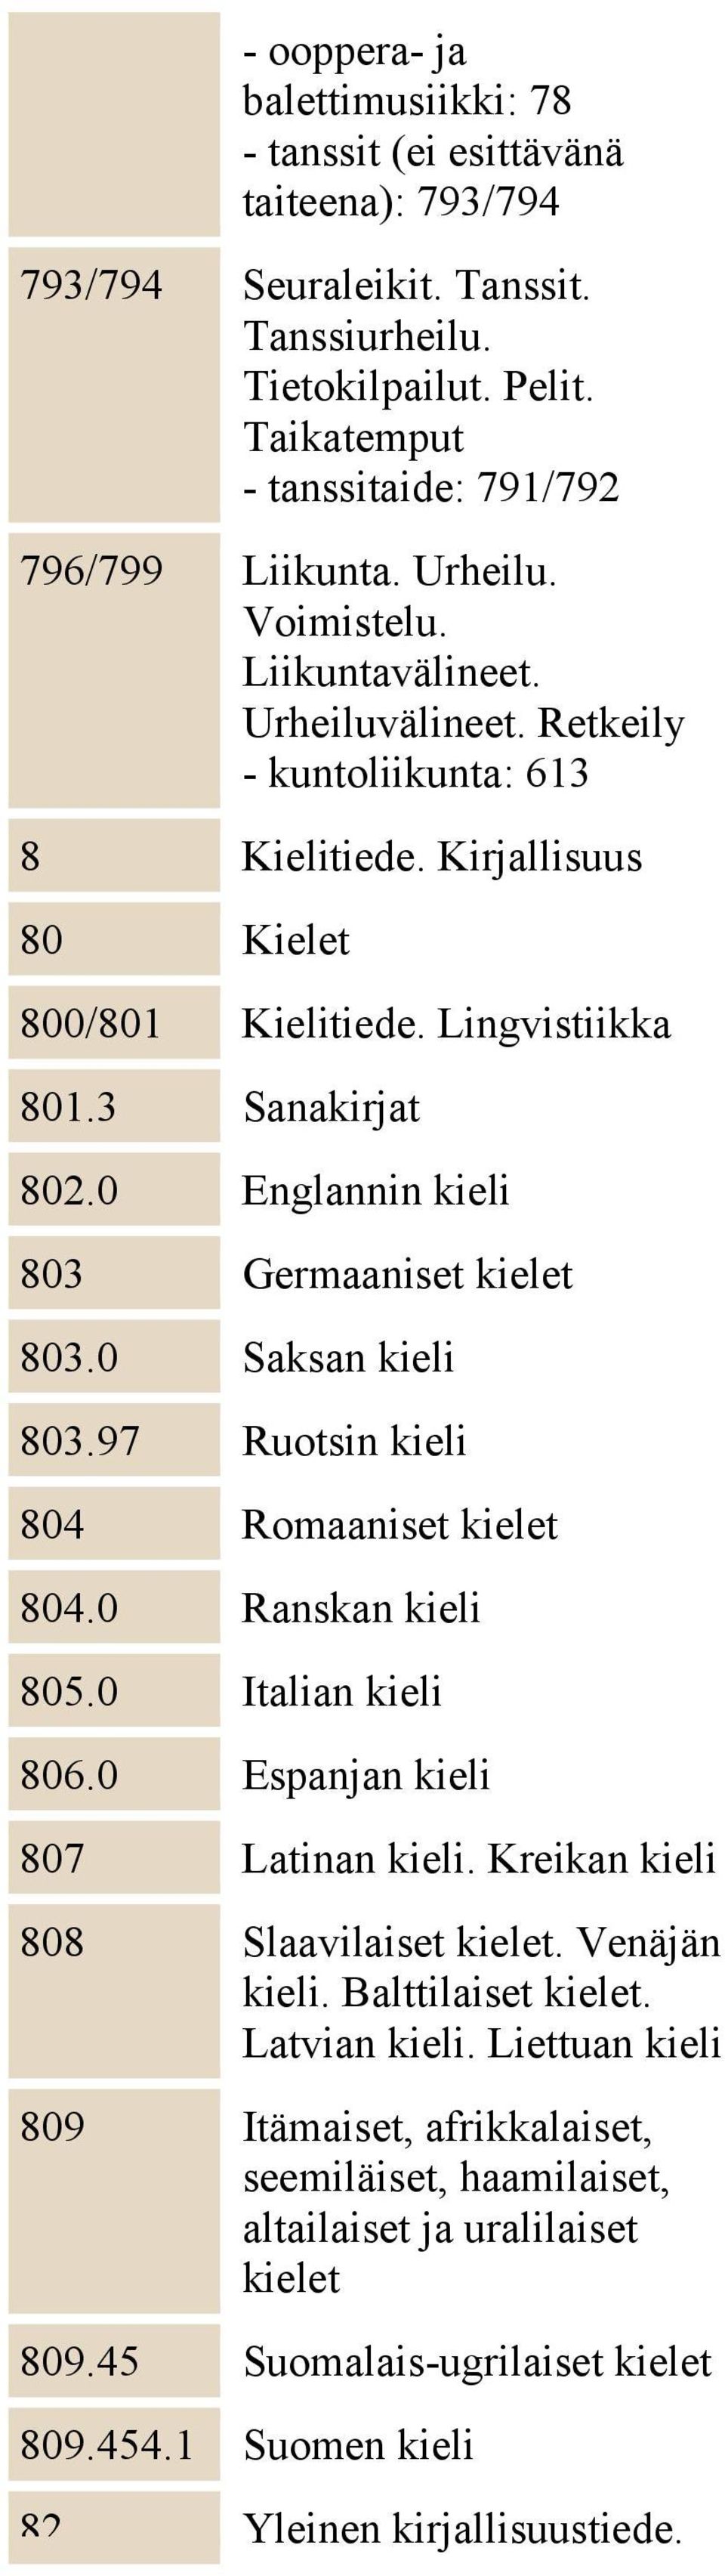 0 Englannin kieli 803 Germaaniset kielet 803.0 Saksan kieli 803.97 Ruotsin kieli 804 Romaaniset kielet 804.0 Ranskan kieli 805.0 Italian kieli 806.0 Espanjan kieli 807 Latinan kieli.